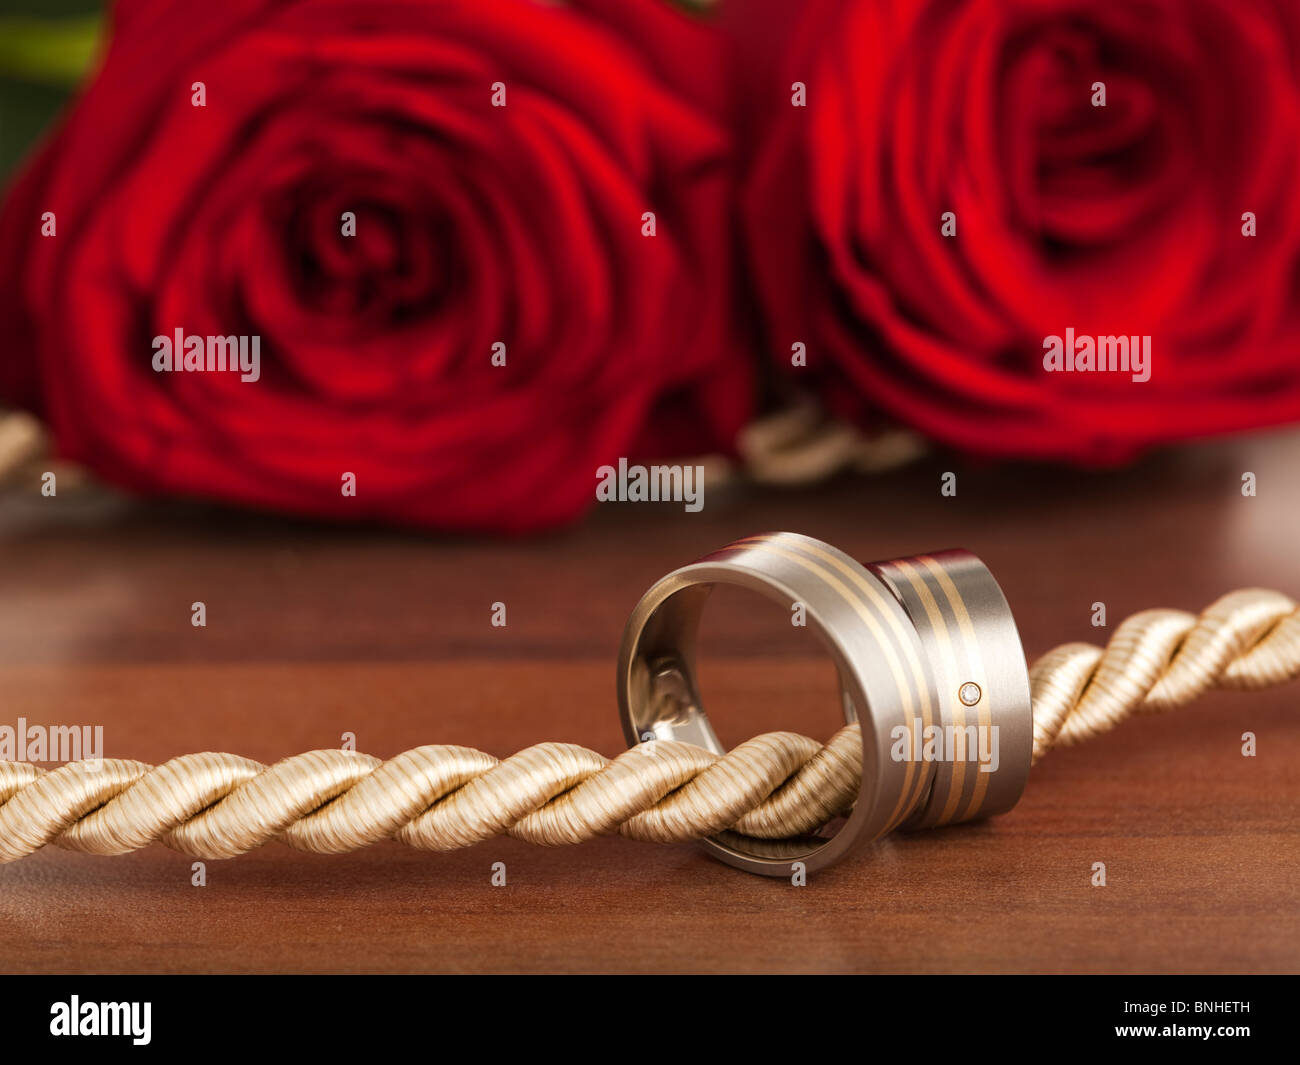 Anneaux de mariage de titane et or sur cordon, roses rouges en arrière-plan Banque D'Images